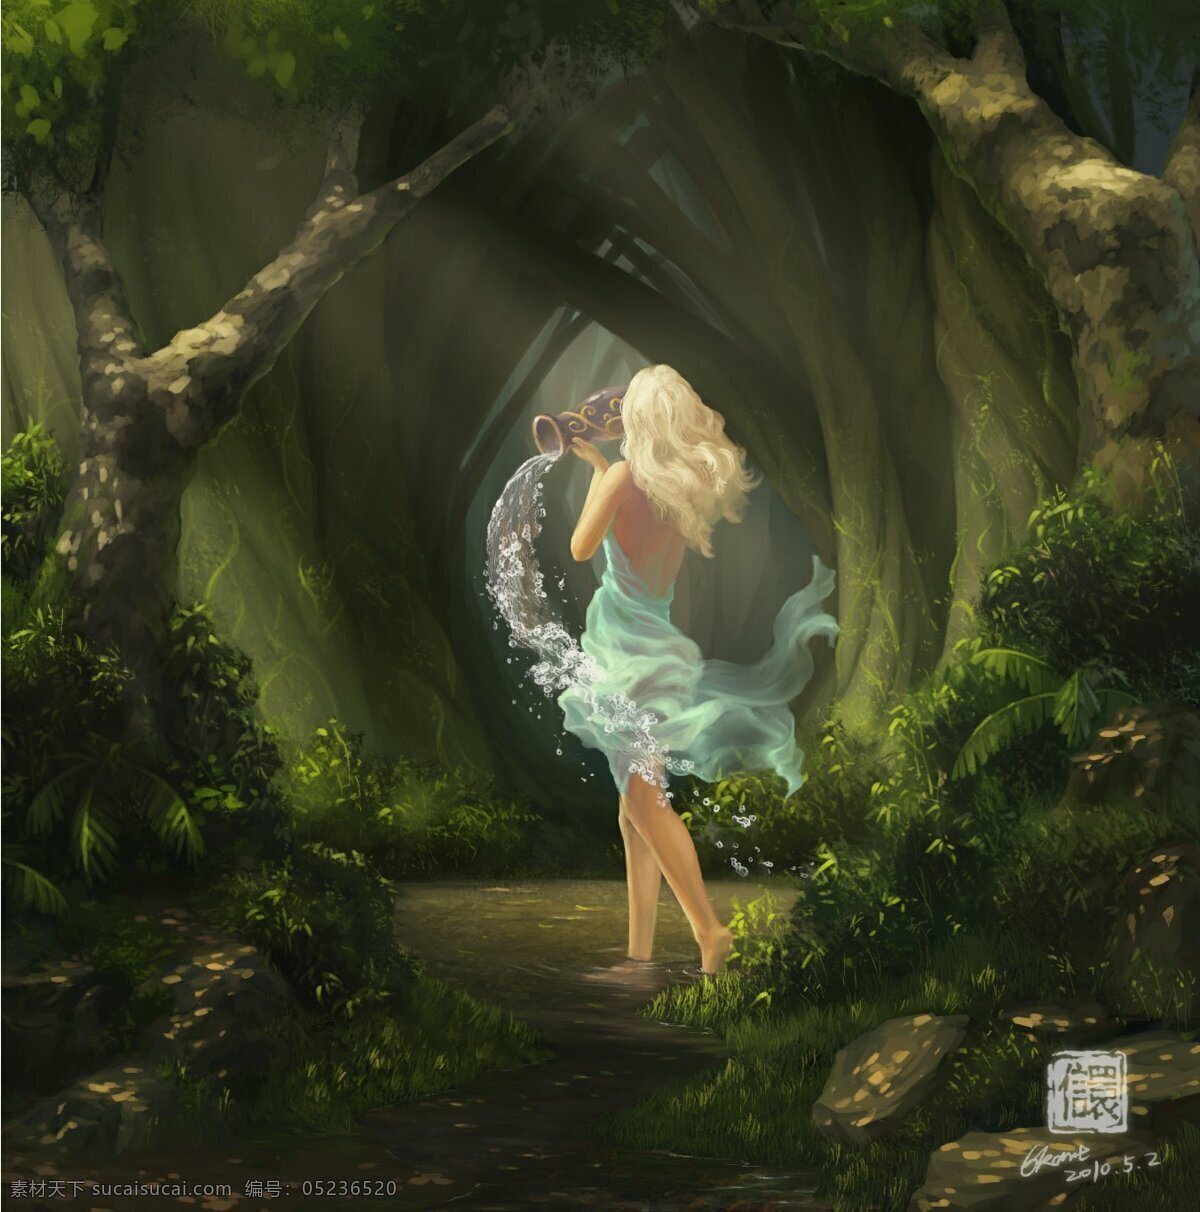 森林中的精灵 美女 精灵 奇幻 魔法 游戏 原画 cg 人物素材 动漫人物 动漫动画 cg人物 cg精灵 美人鱼